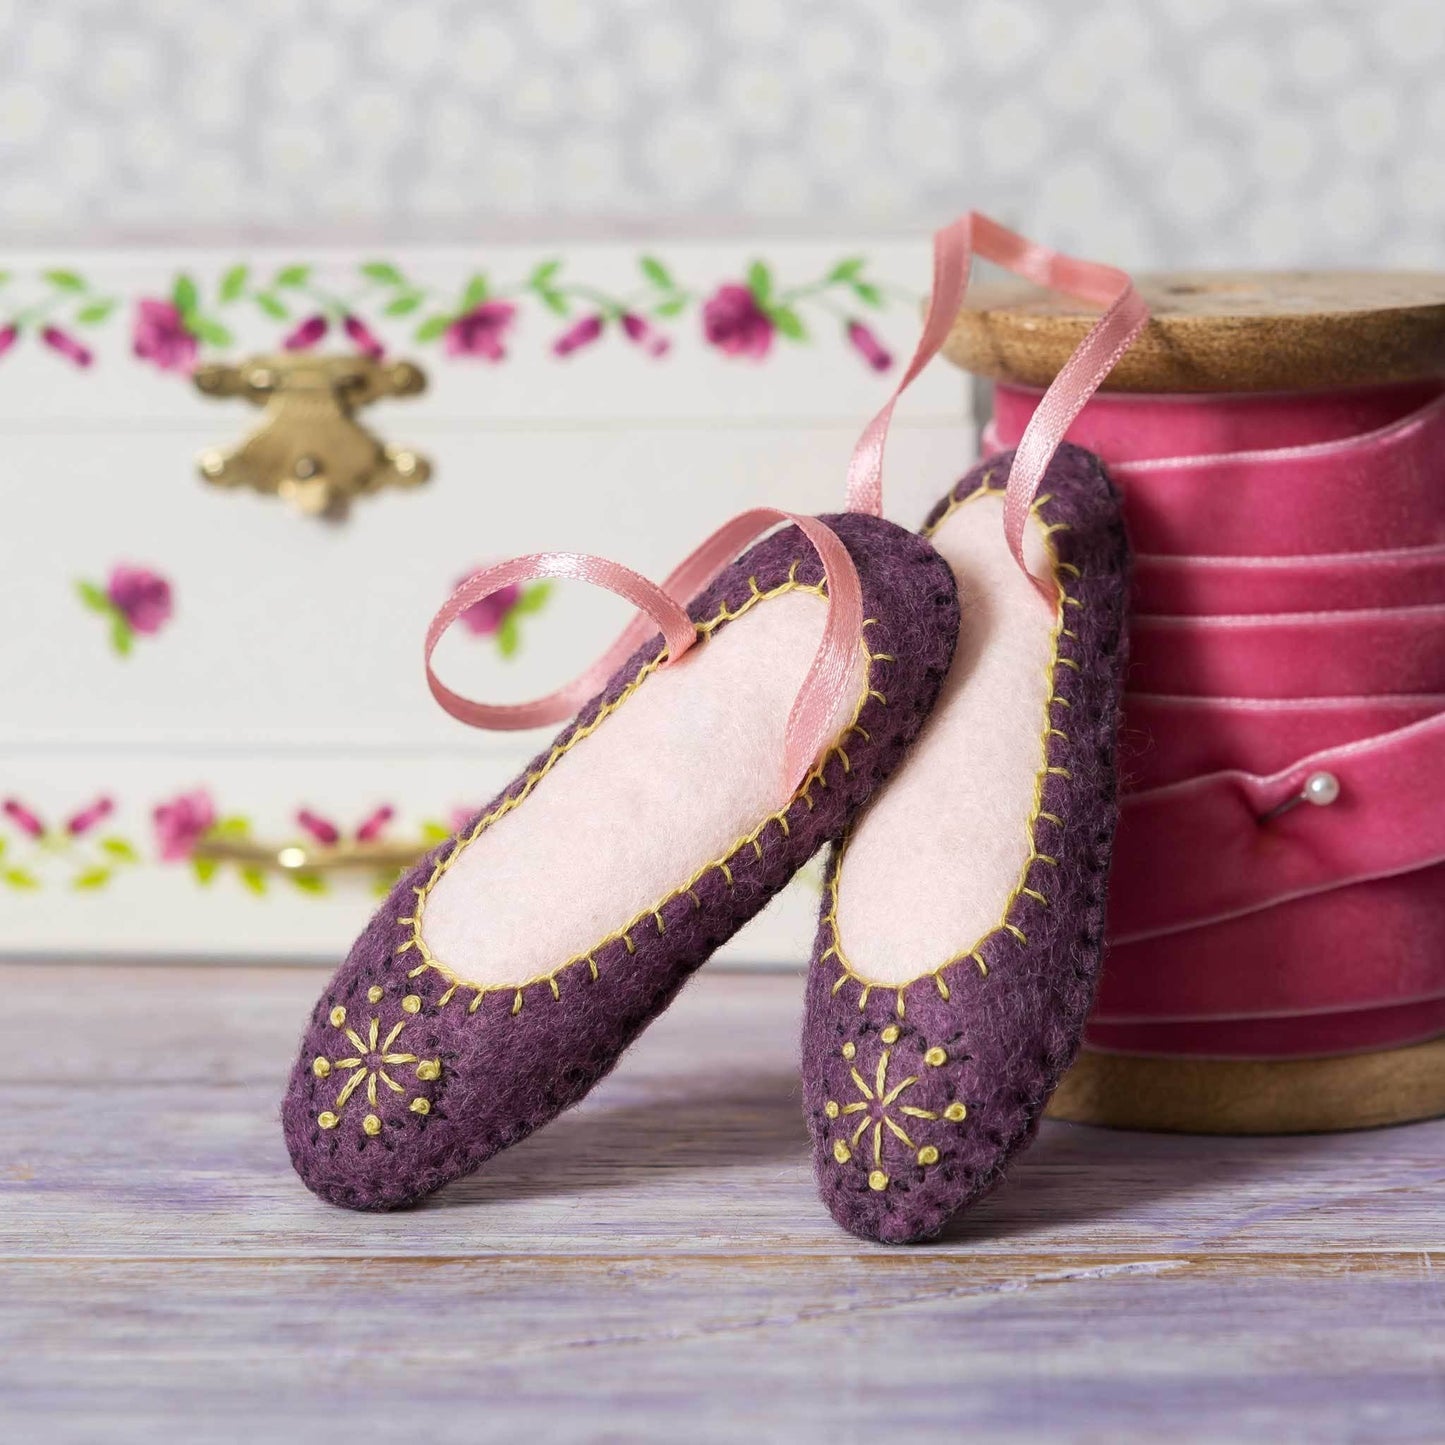 Ett par lila ballerinaskor i filt med ljusrosa sidenband för upphängning. Skorna står lutandes mot en ceriserosa rulle av sammetsband. 